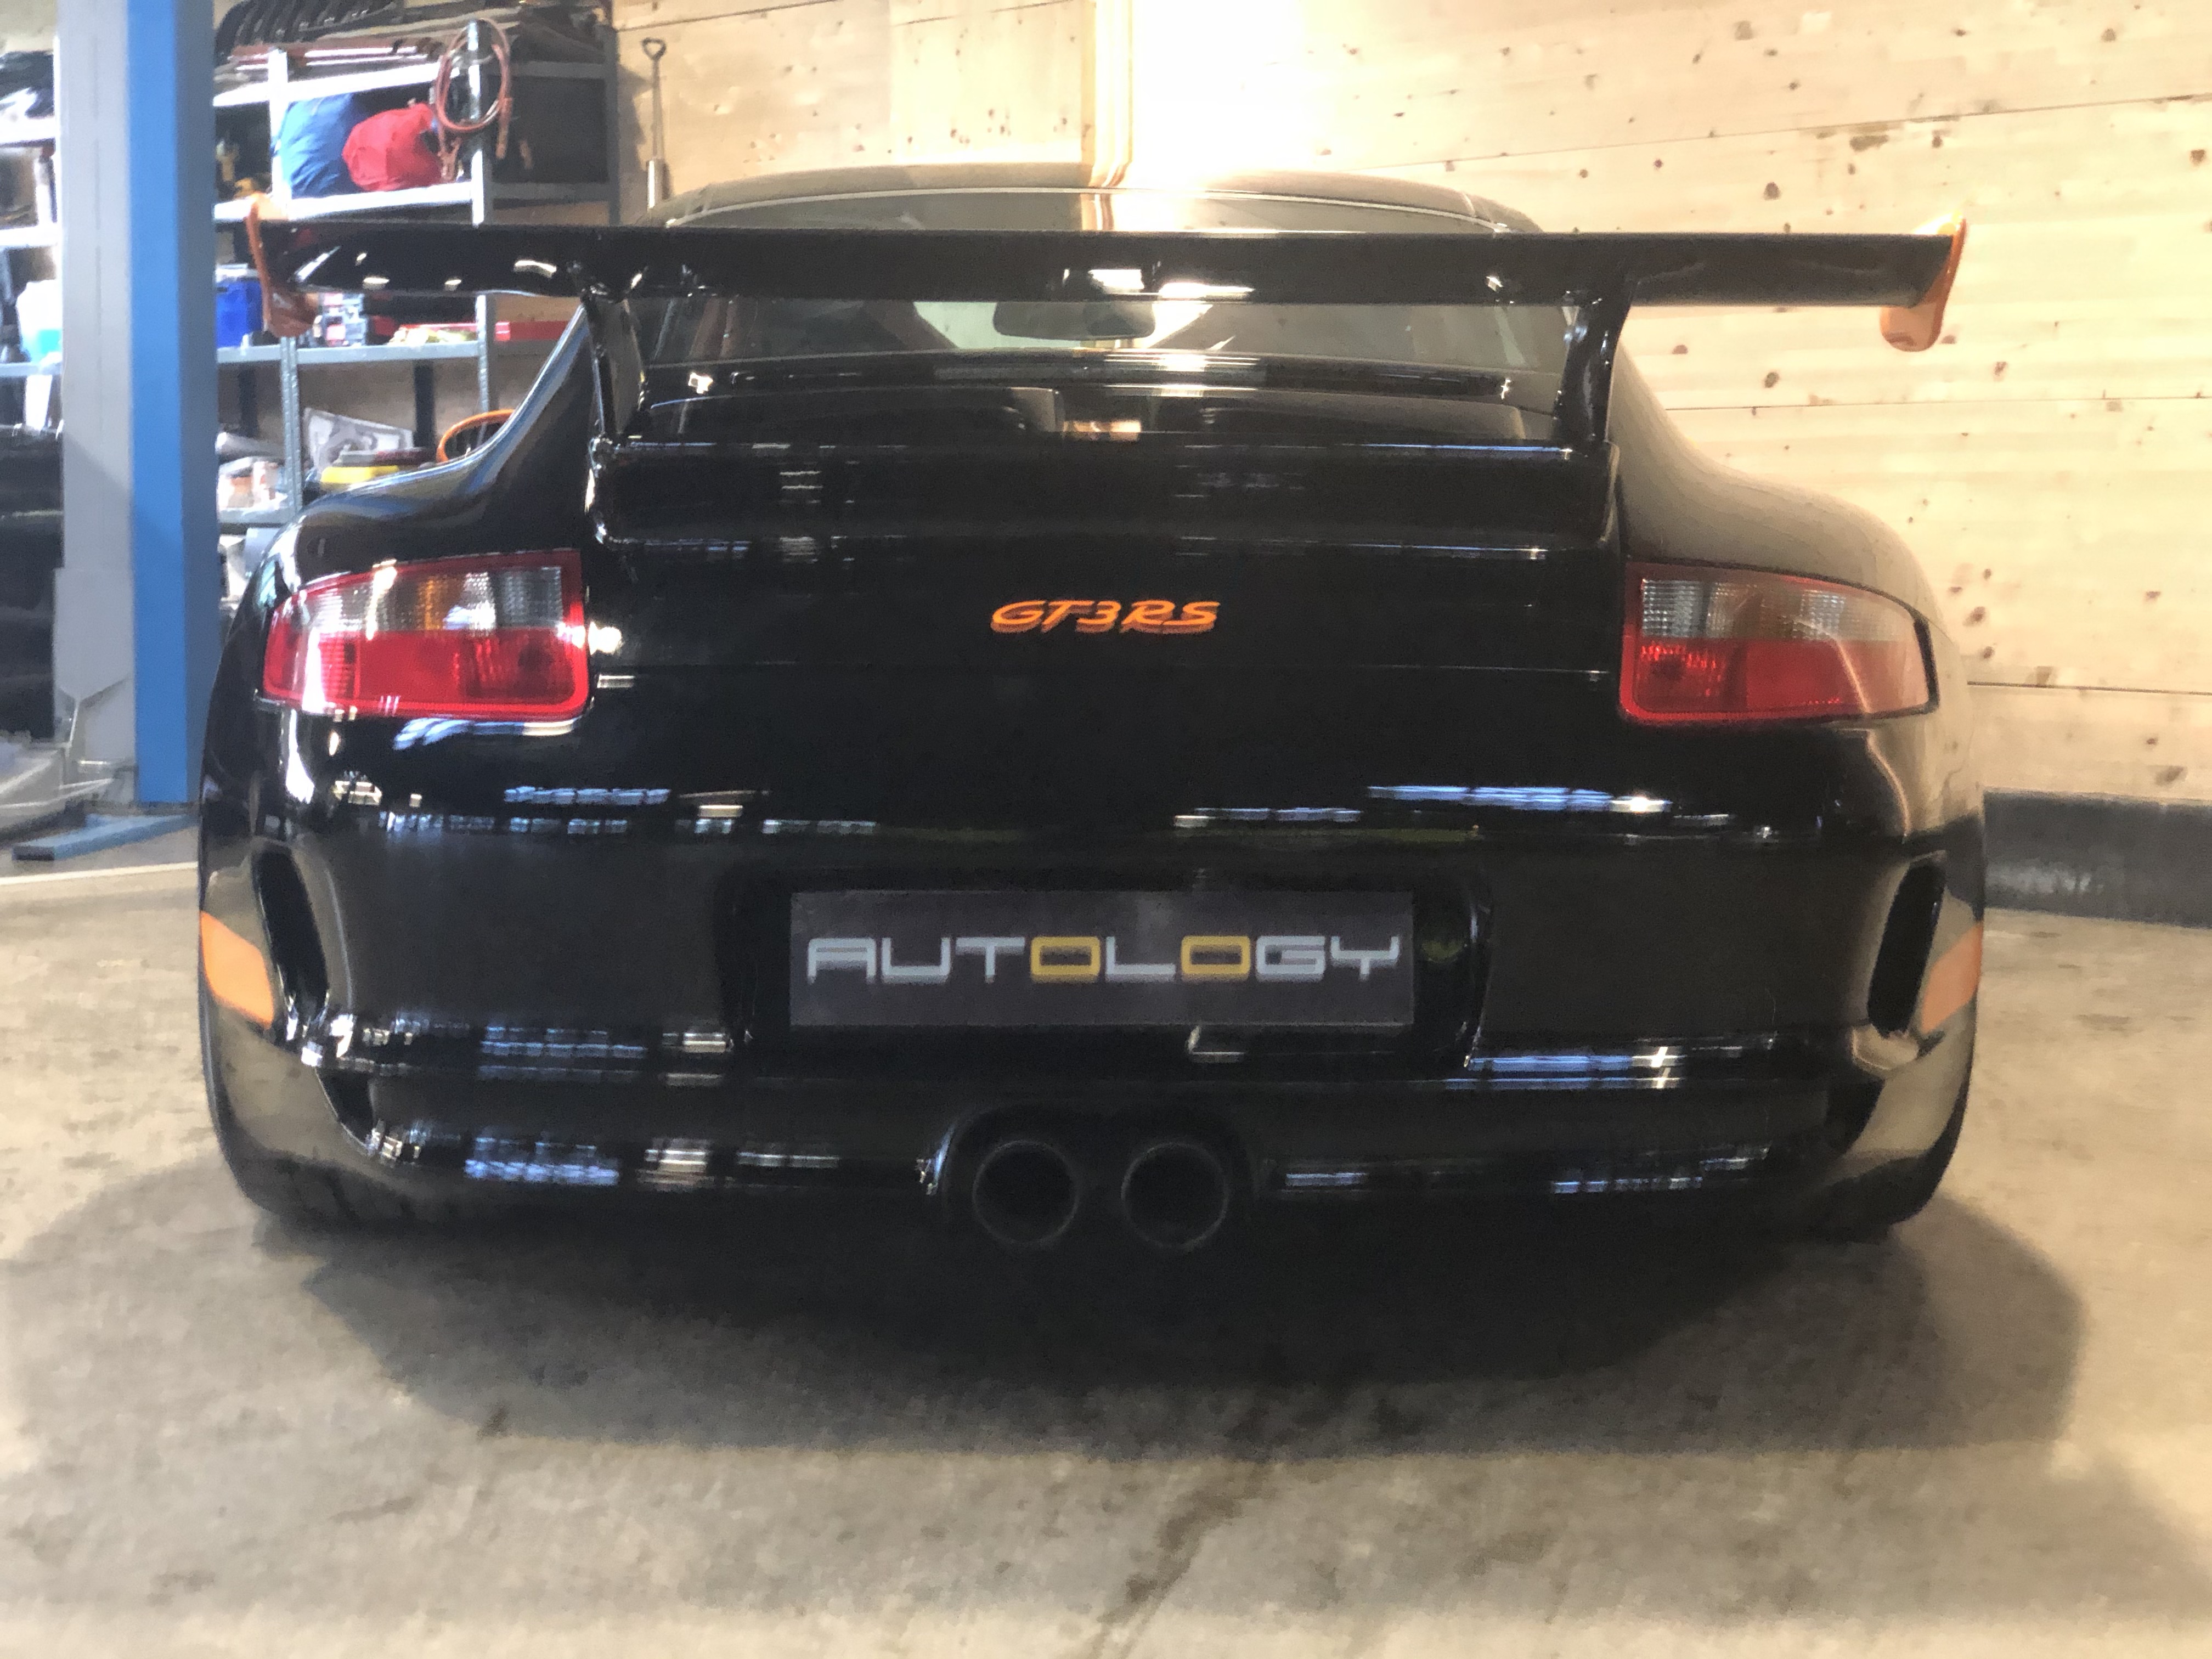 Porsche 997 GT3 RS « Phase 1 »